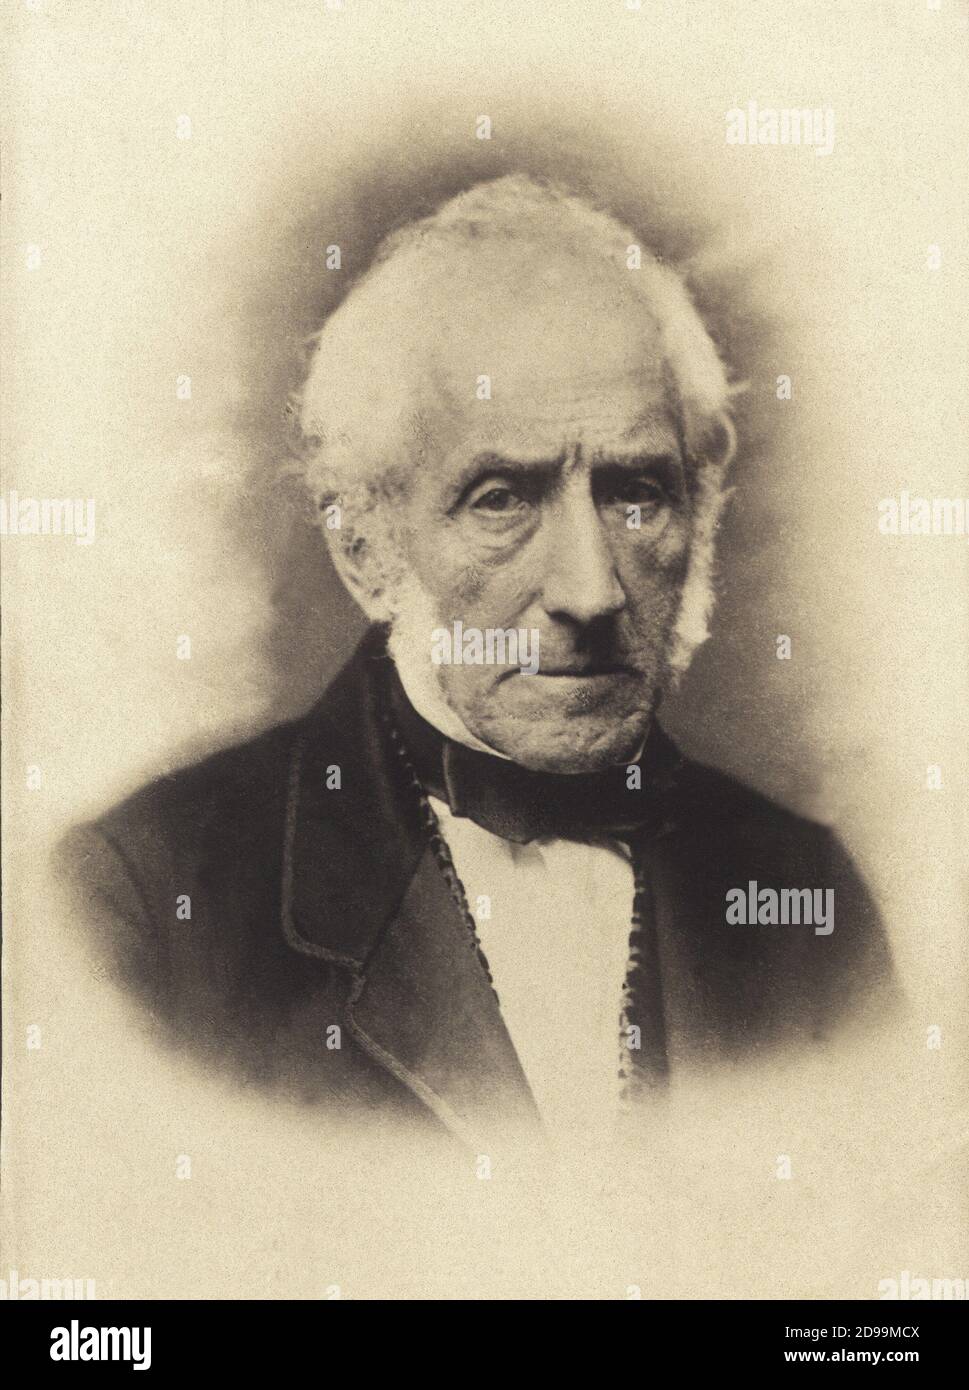 Le plus célèbre écrivain italien ALESSANDRO MANZONI ( Milano 1785 - 1873 ) - portrait - ritratto - scrittore - poeta - poète - cravate - papilllon - cravatta - letteratura italiana ---- Archivio GBB Banque D'Images